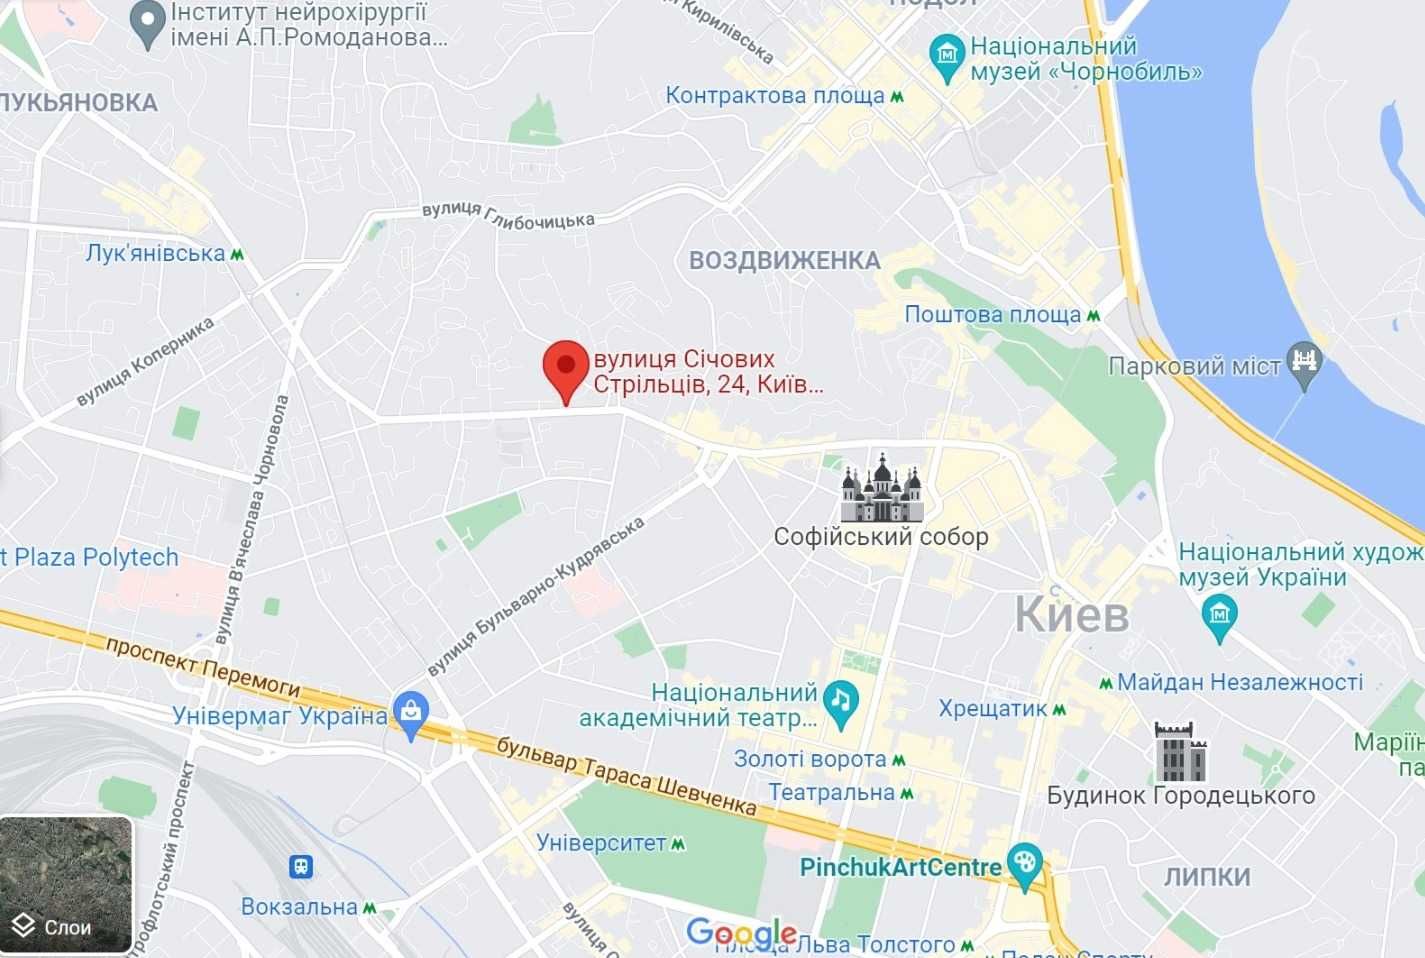 0,61 Га в соответствии! Под ЖК со всеми коммуникациями в центре Киева